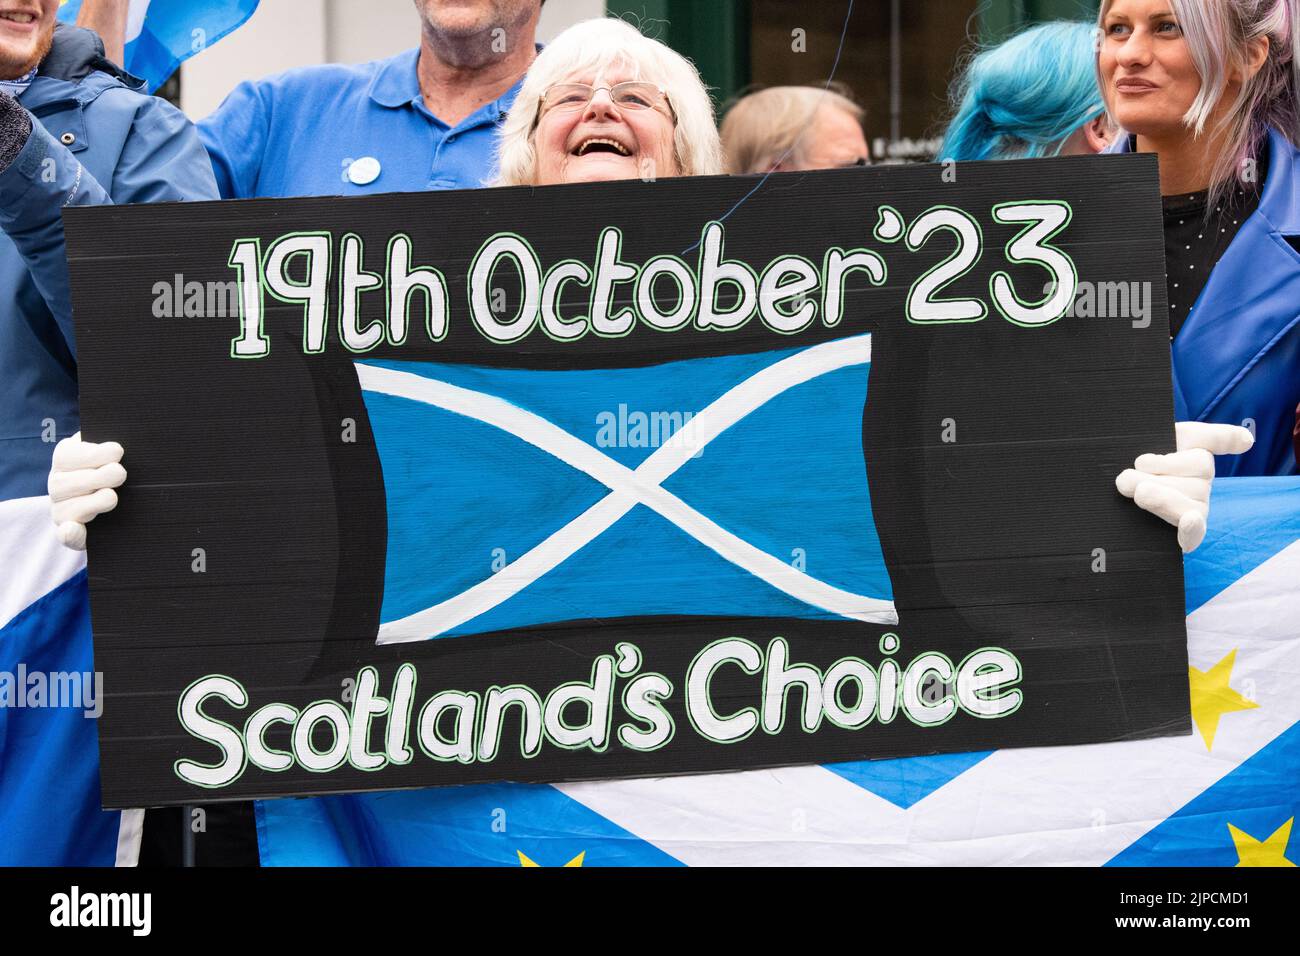 Scottish Independence referendum 19th octobre 2023 Tait tenu lors des détestations des élections du leadership conservateur à Perth, Écosse, Royaume-Uni 16 août 2022 Banque D'Images